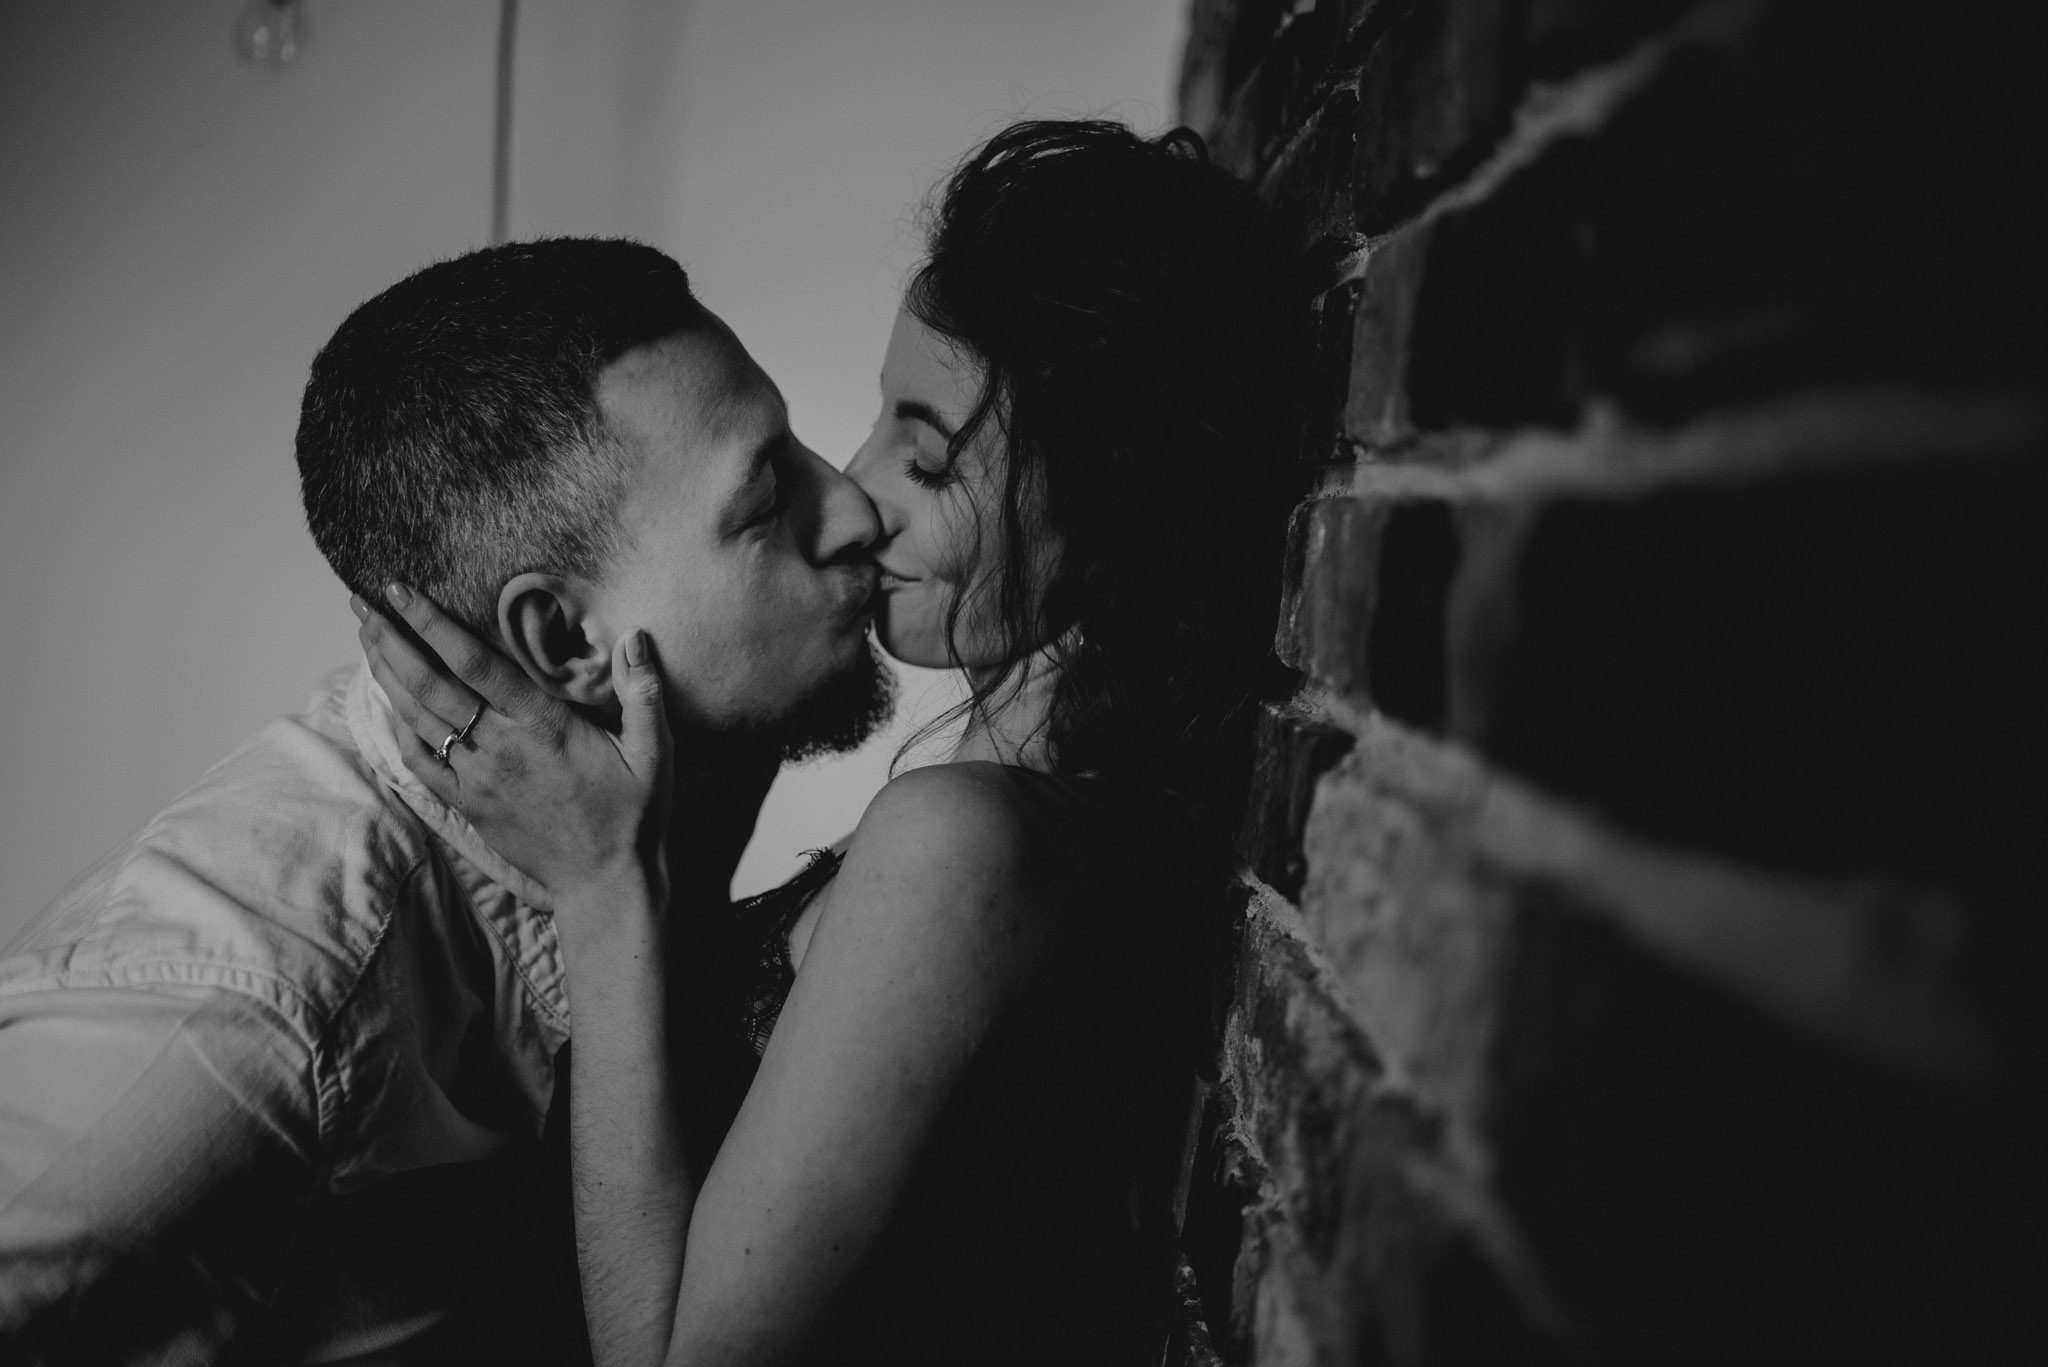 Żona przytula męża i całuje go w usta - sesja sensualna pary lifestyle w Poznaniu